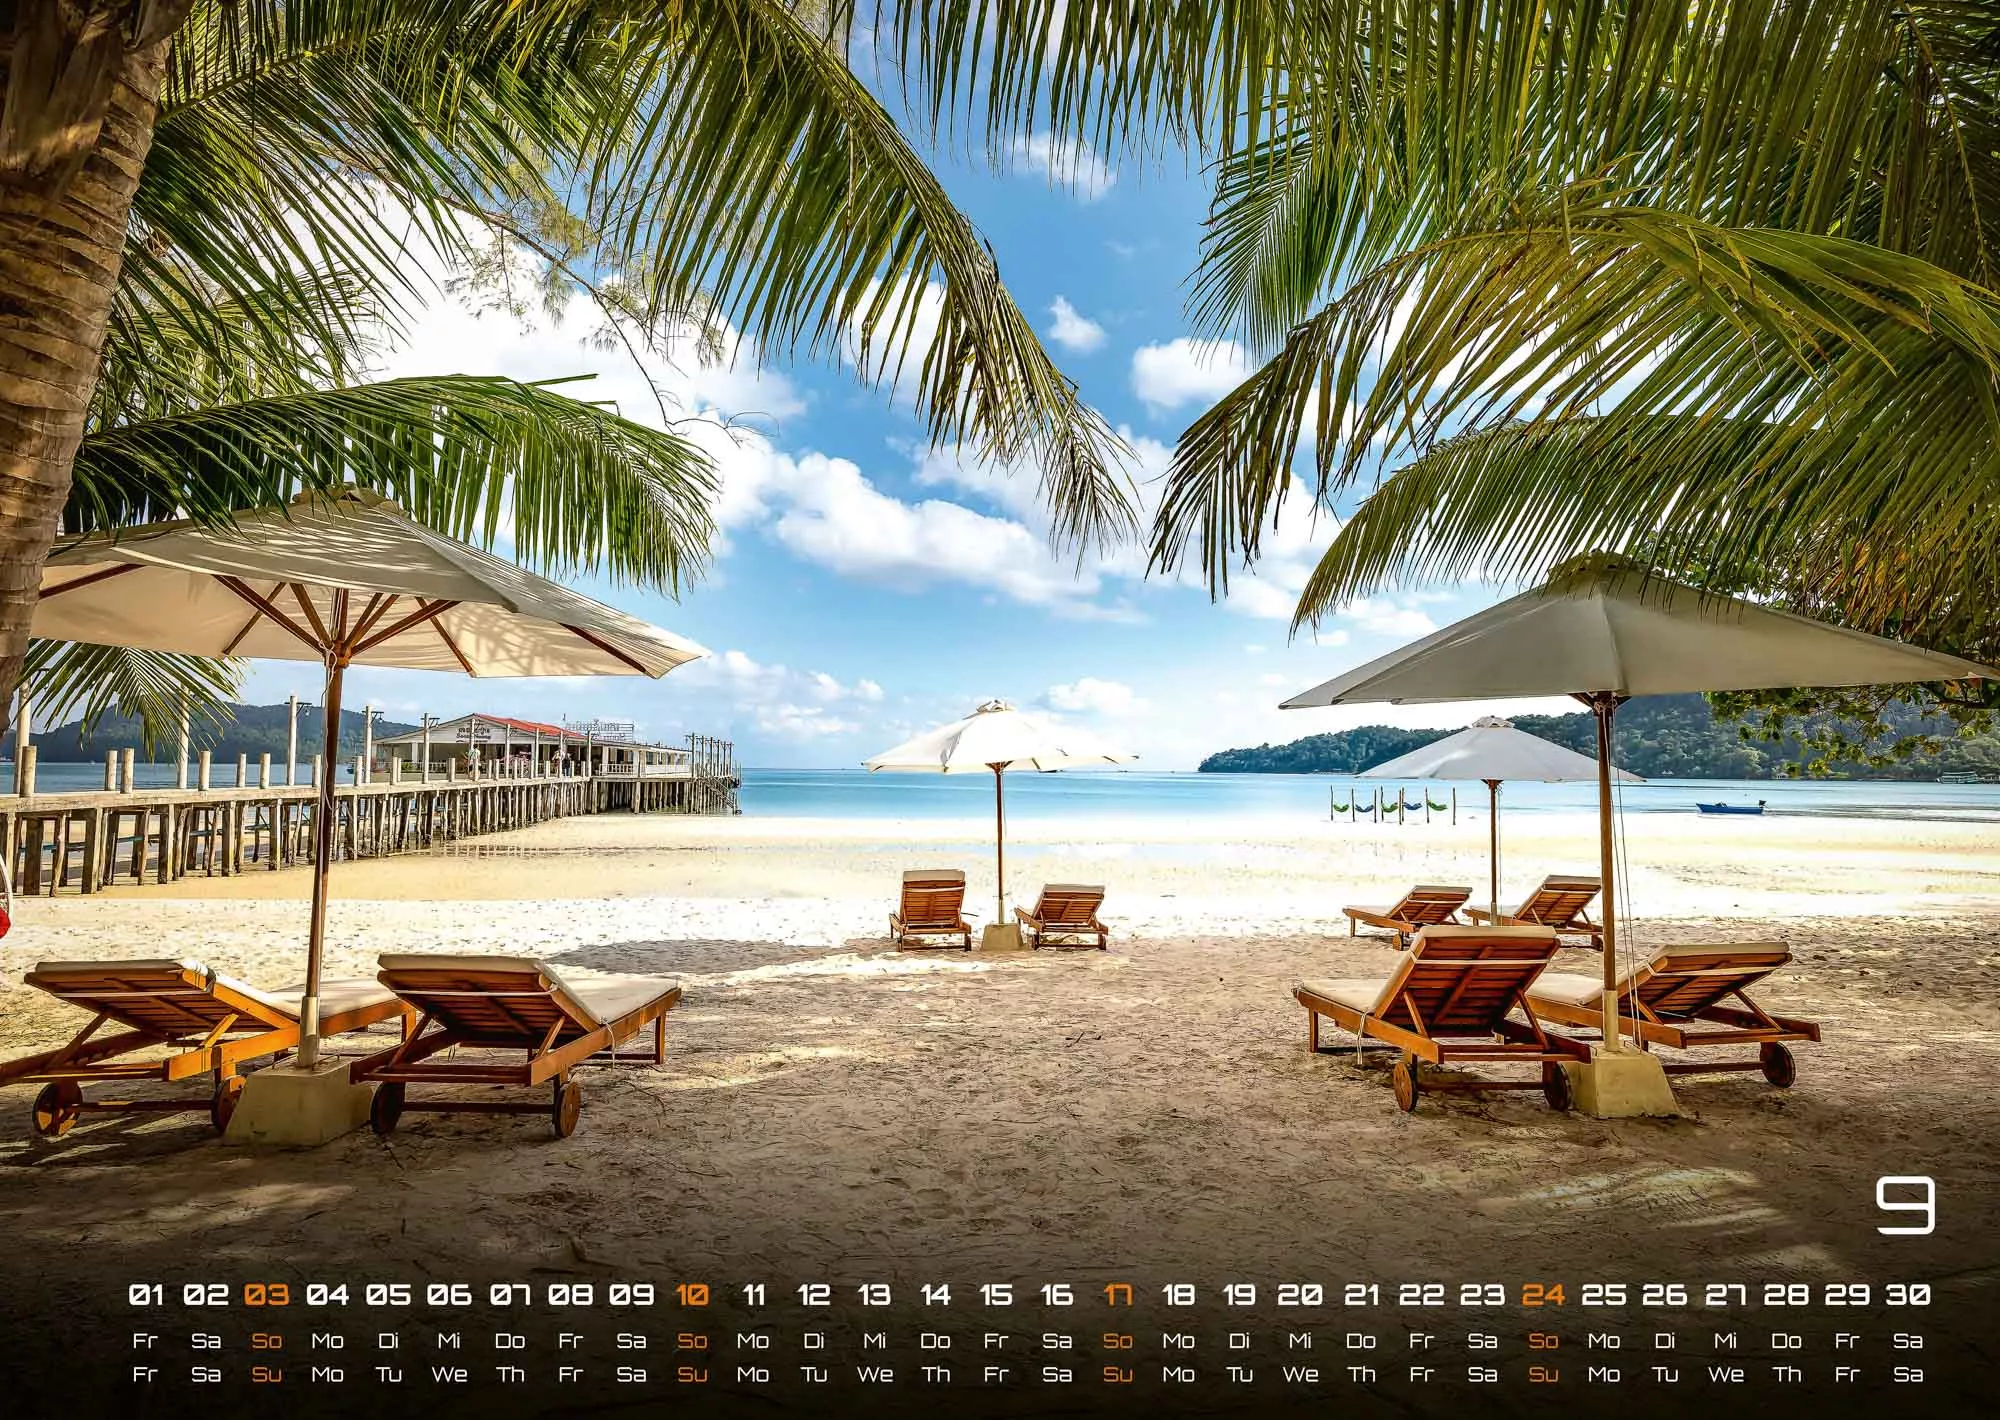 Inseln & Strände - Plätze zum Entspannen - 2023 - Kalender